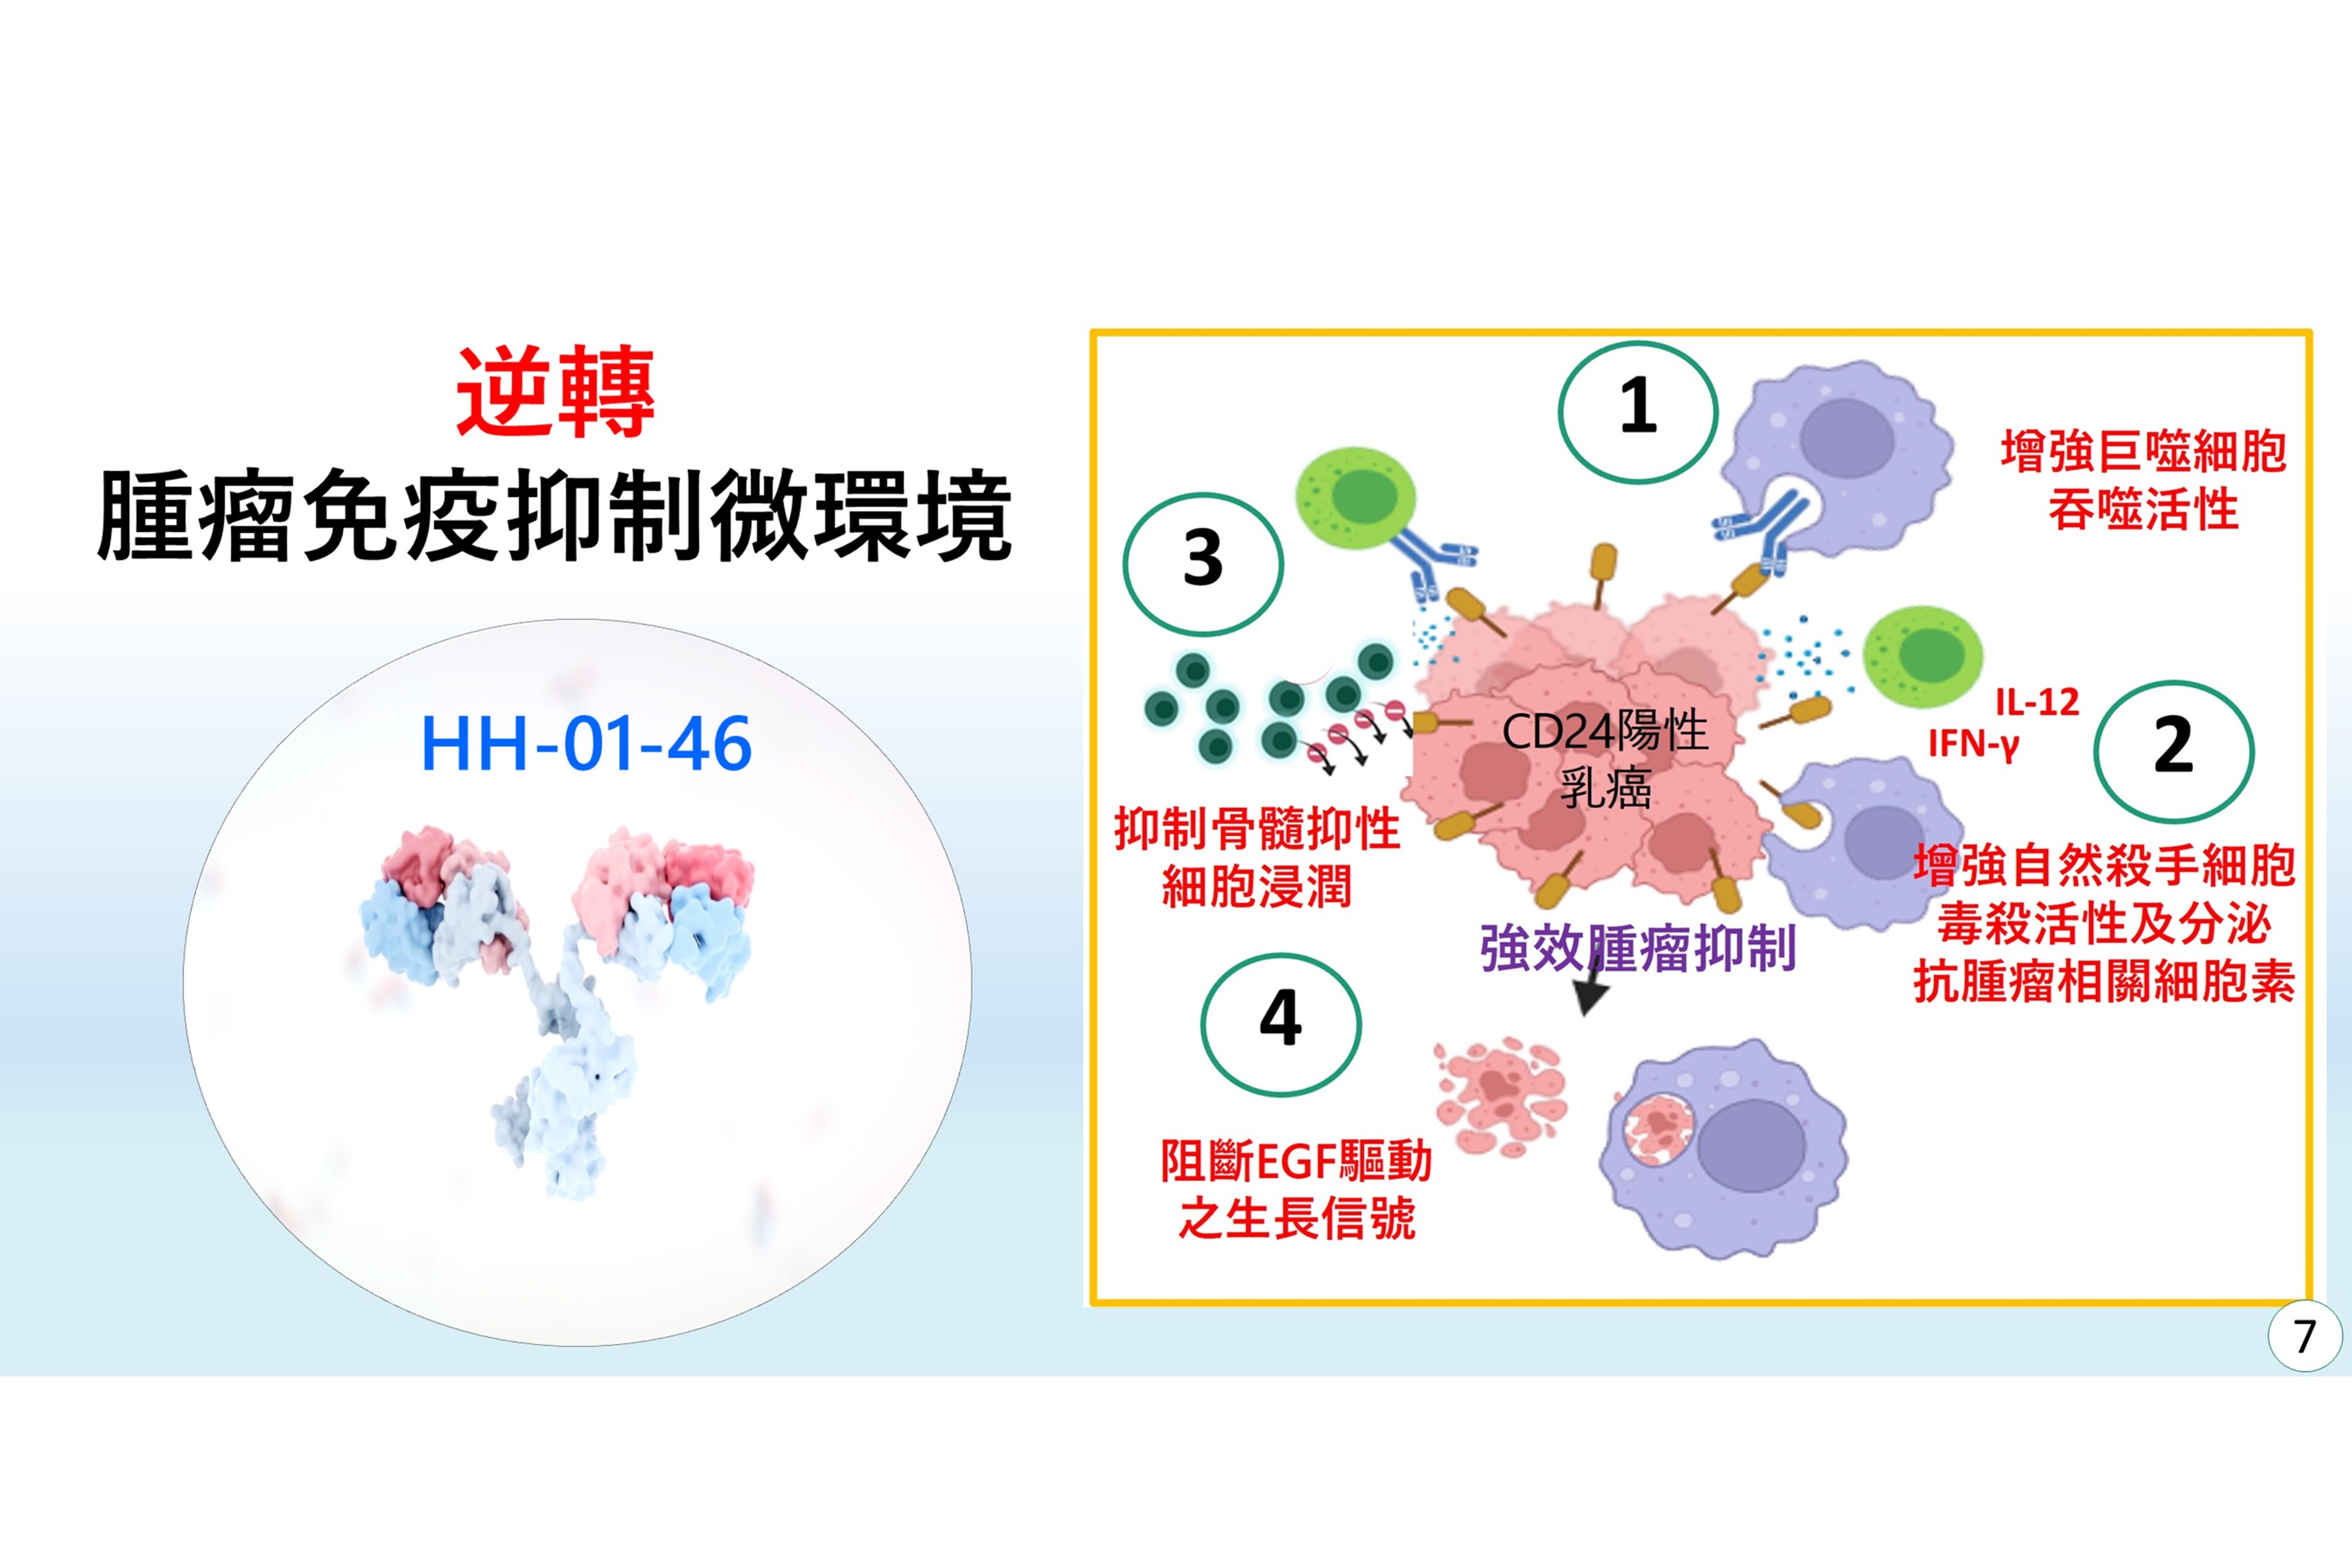 治療性CD24人源化單株抗體藥的抗腫瘤轉譯應用